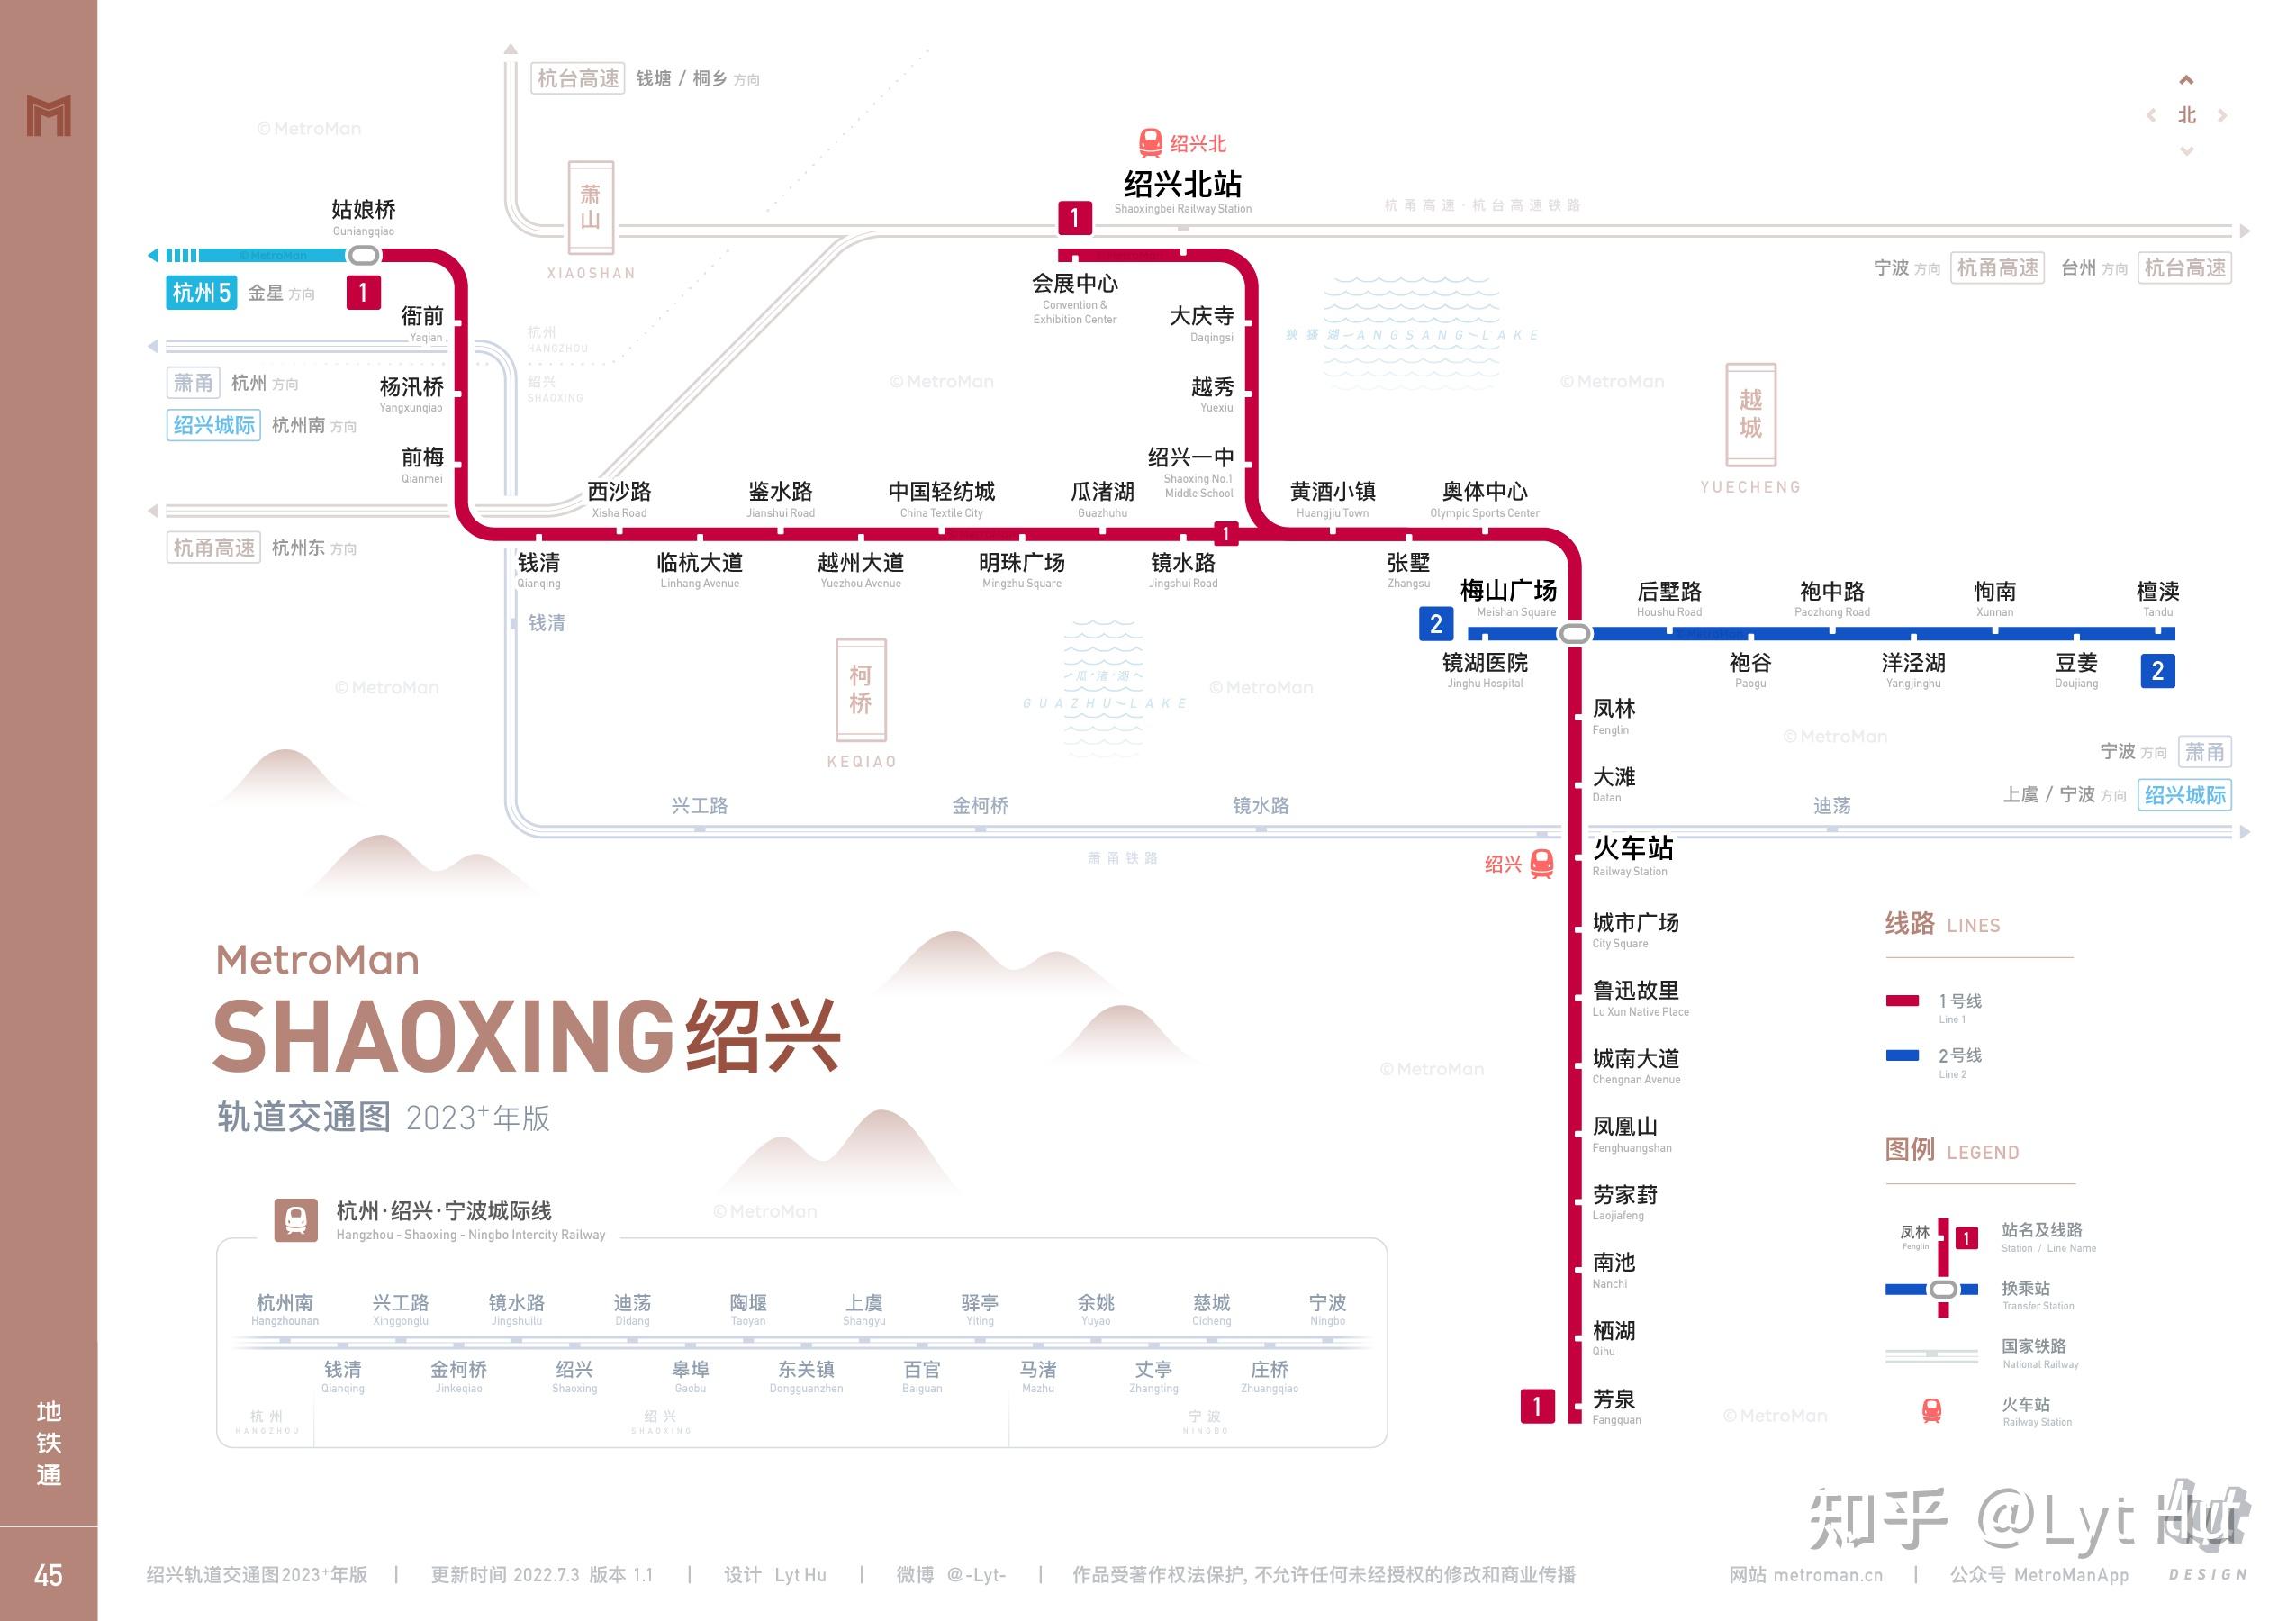 温州·绍兴·金华·台州轨道交通线路图